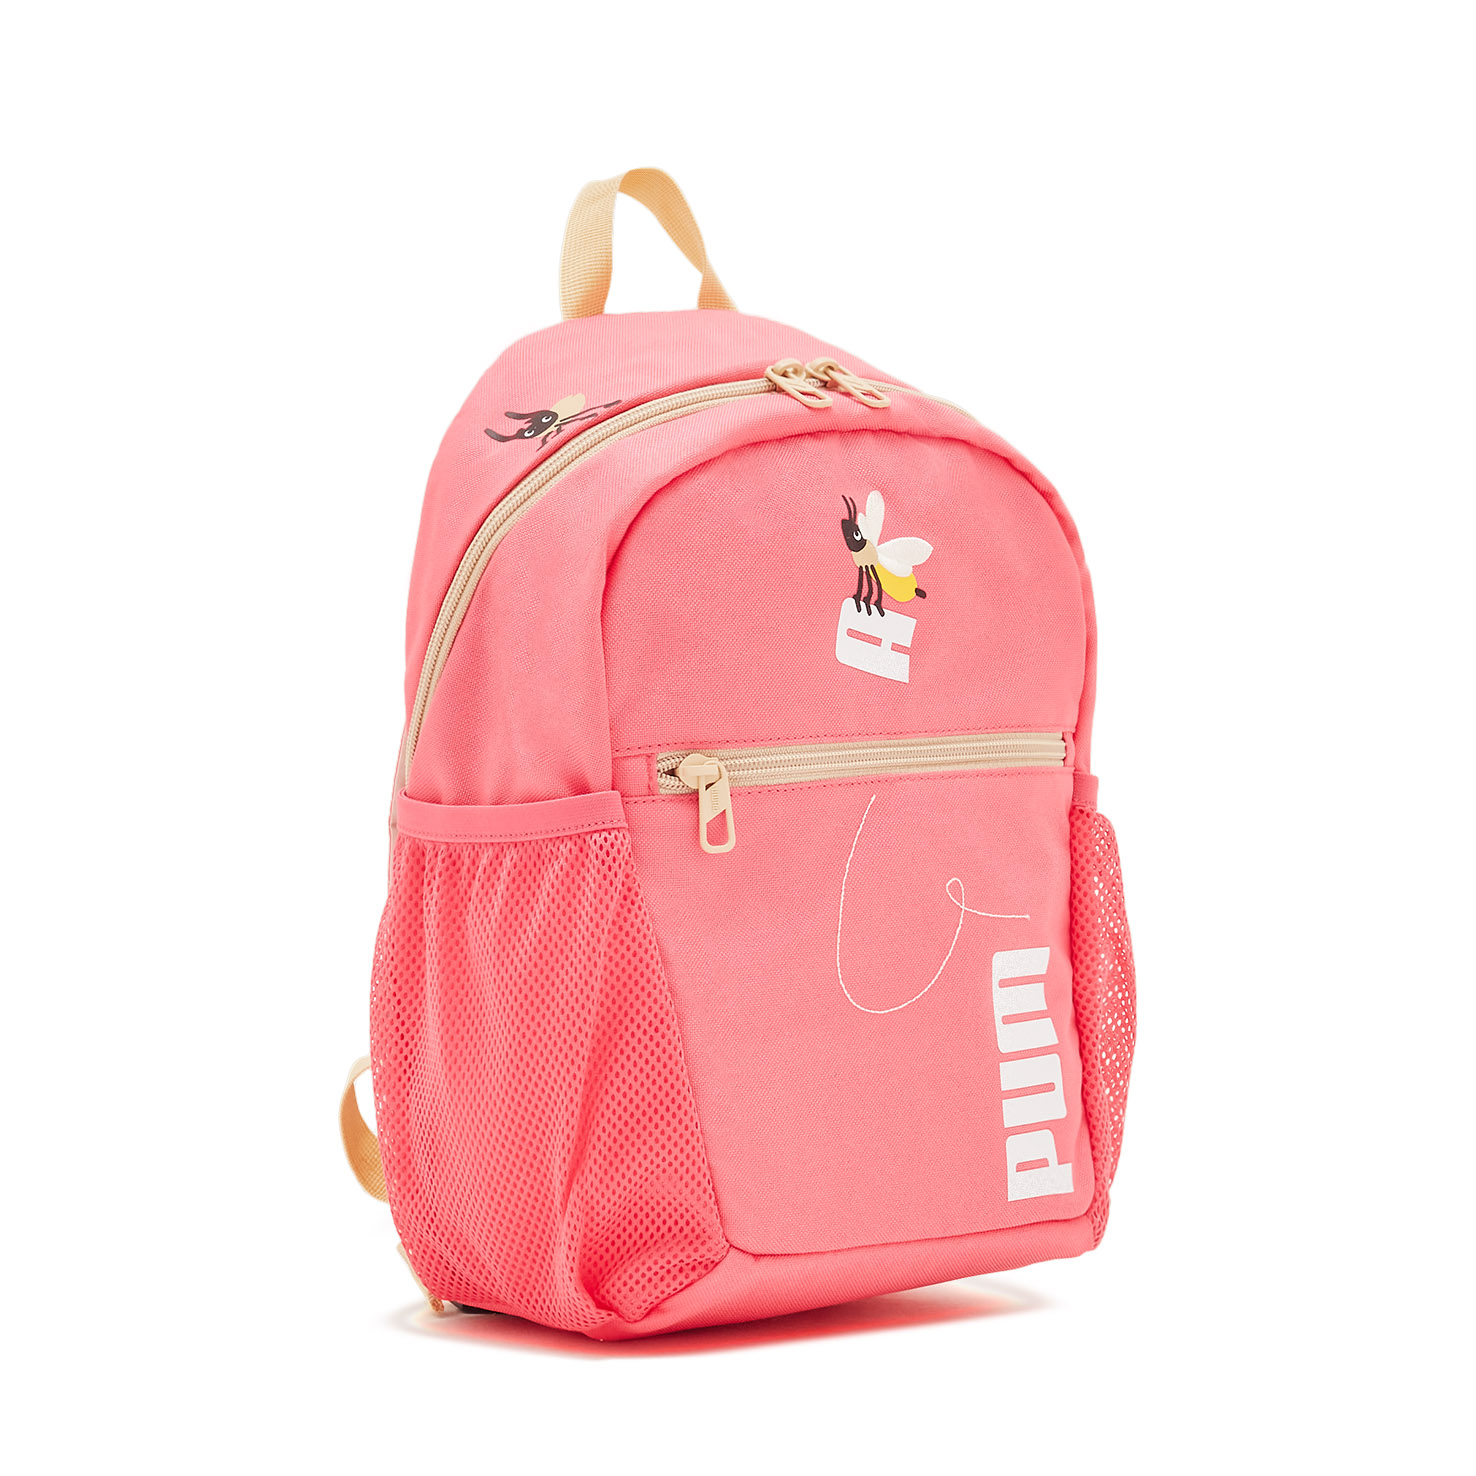 Small World Backpack PUMA, размер Один размер, цвет розовый PM079203 - фото 3